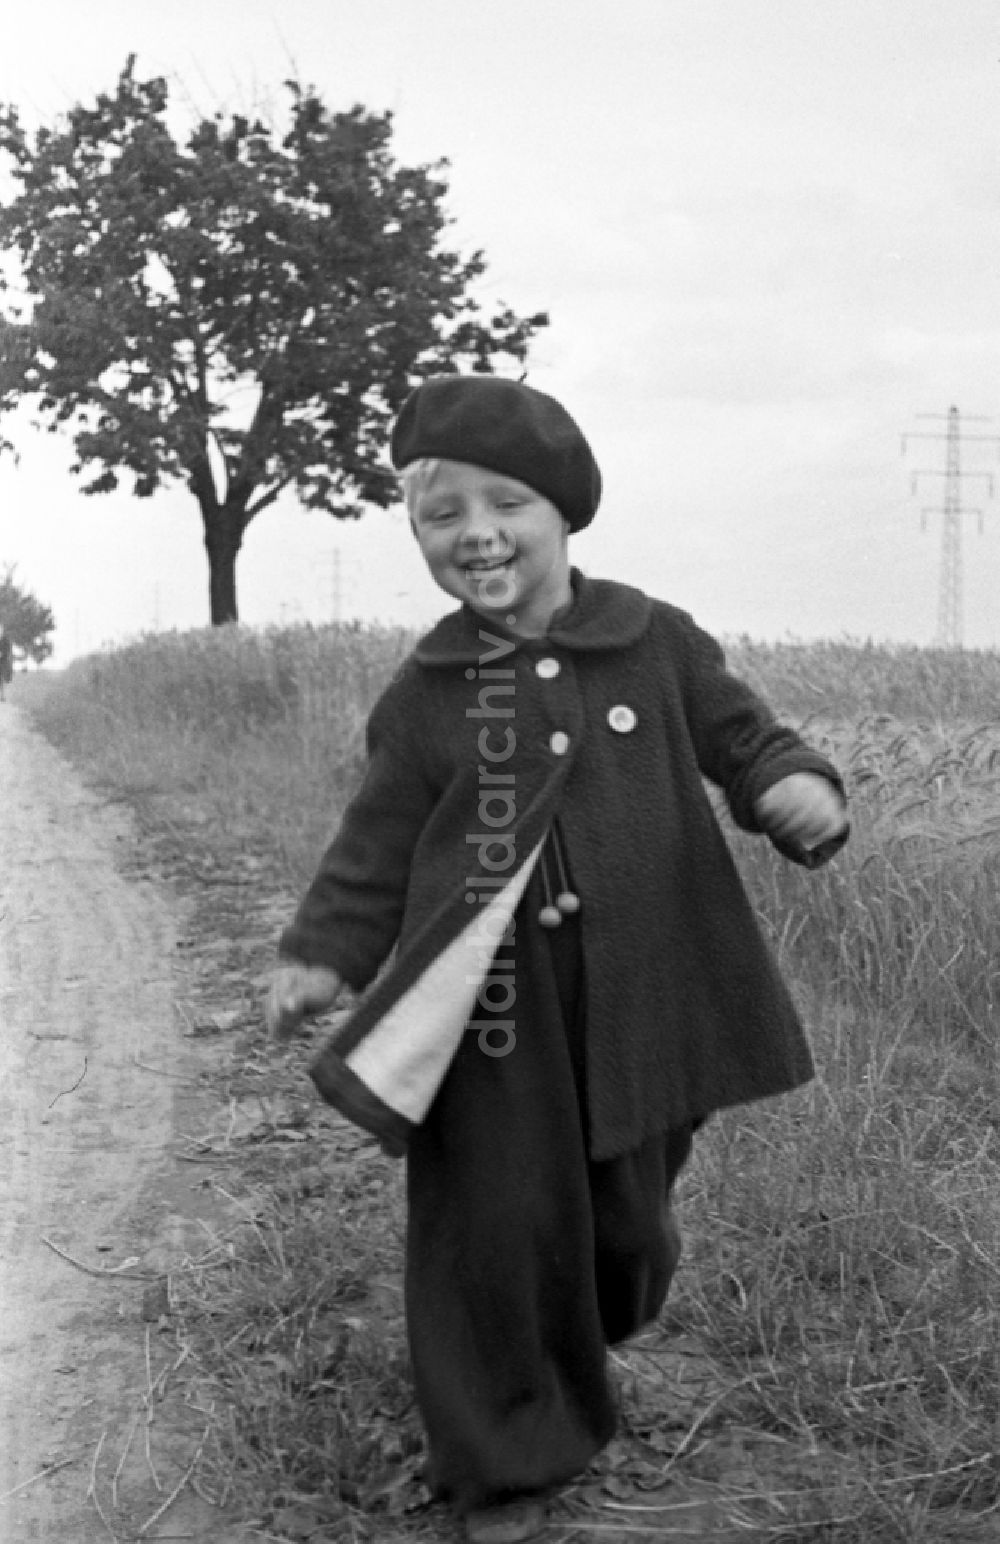 DDR-Fotoarchiv: Merseburg - Kleines Kind in Pumphosen und mit Baskenmütze in Merseburg im Bundesland Sachsen-Anhalt auf dem Gebiet der ehemaligen DDR, Deutsche Demokratische Republik